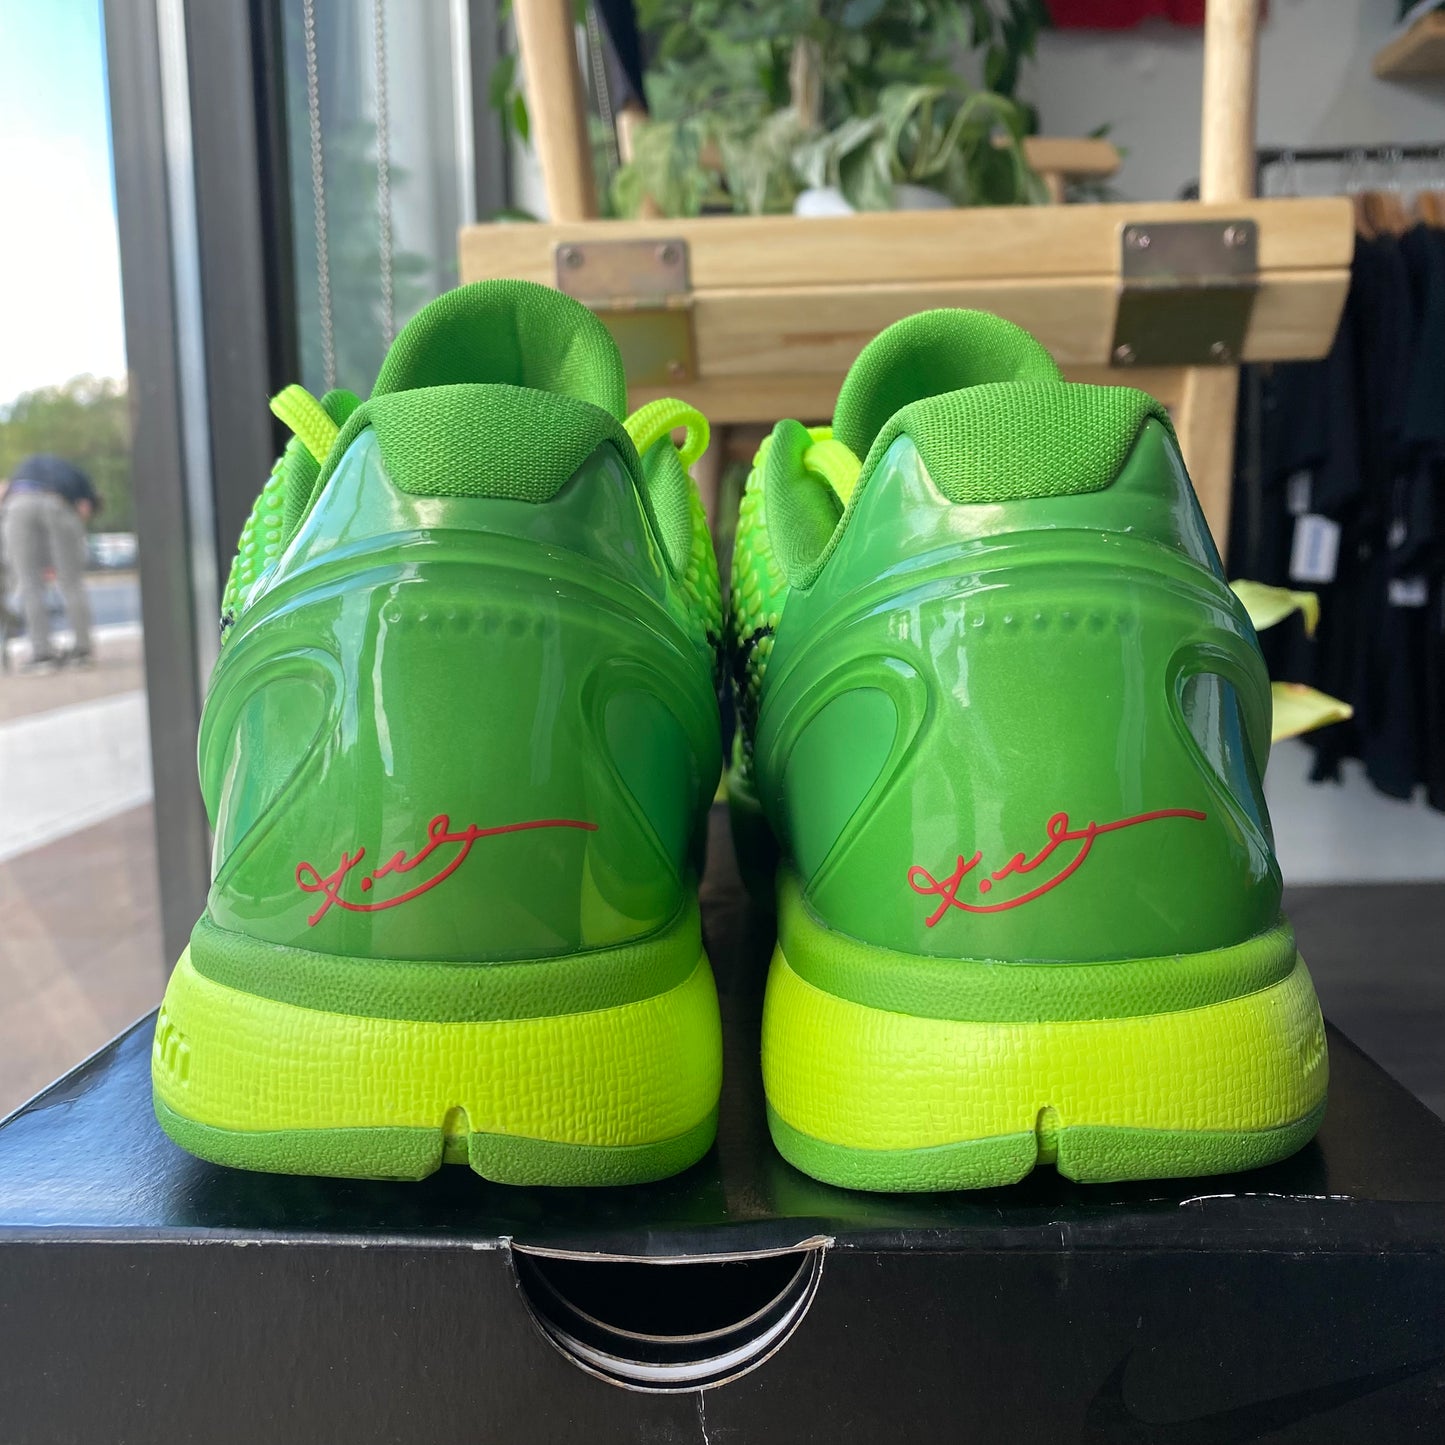 Brand New Nike Kobe 6 Protro "Grinch"